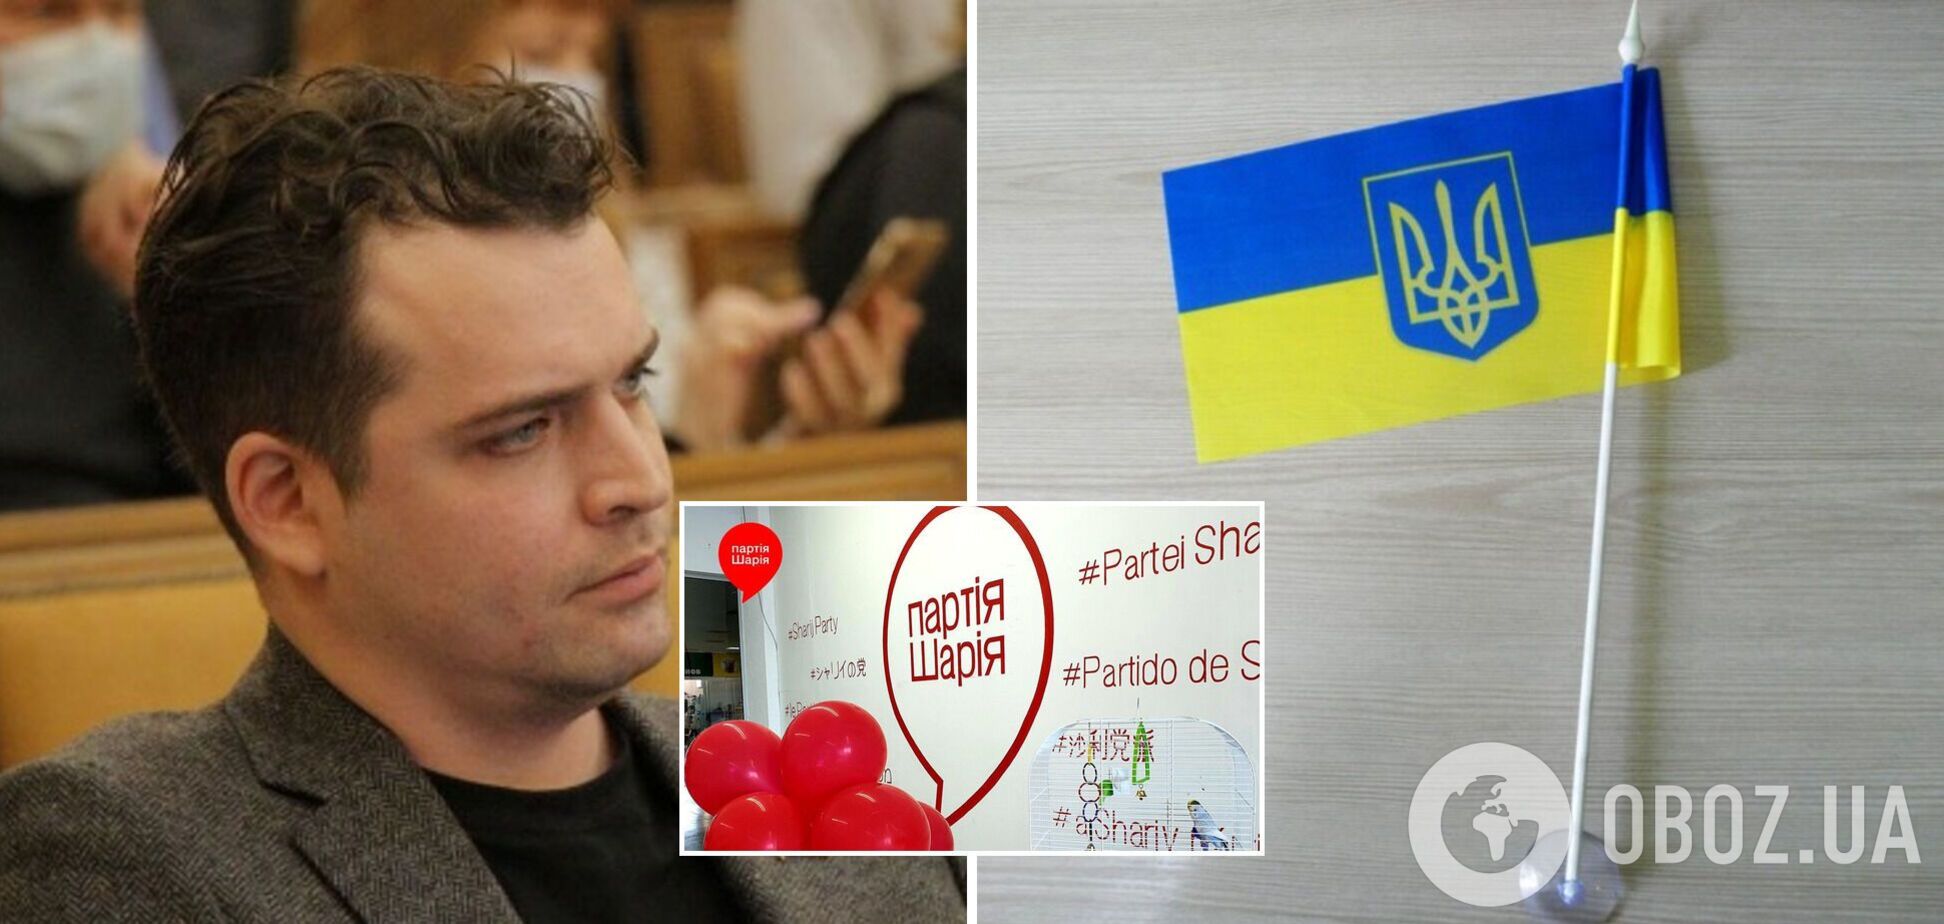 В Одесі депутат від 'Партії Шарія' на сесії міськради викинув прапори України, у поліції розпочали розслідування. Відео